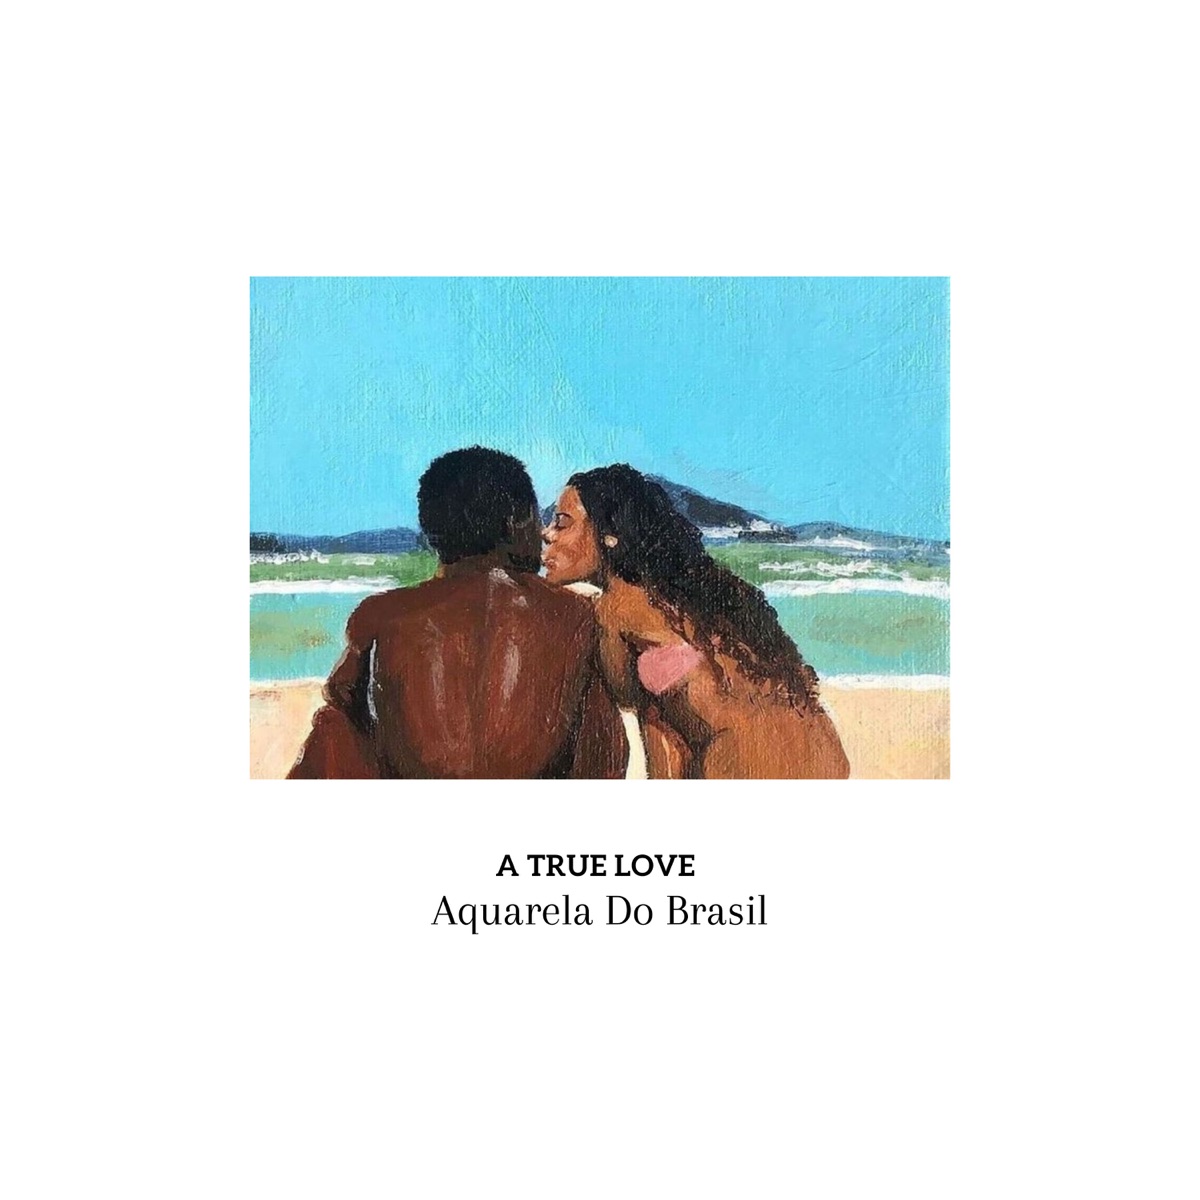 A True Love - Single - Album by Aquarela do Brasil, Conexao Tupi & Kanticos  - Apple Music